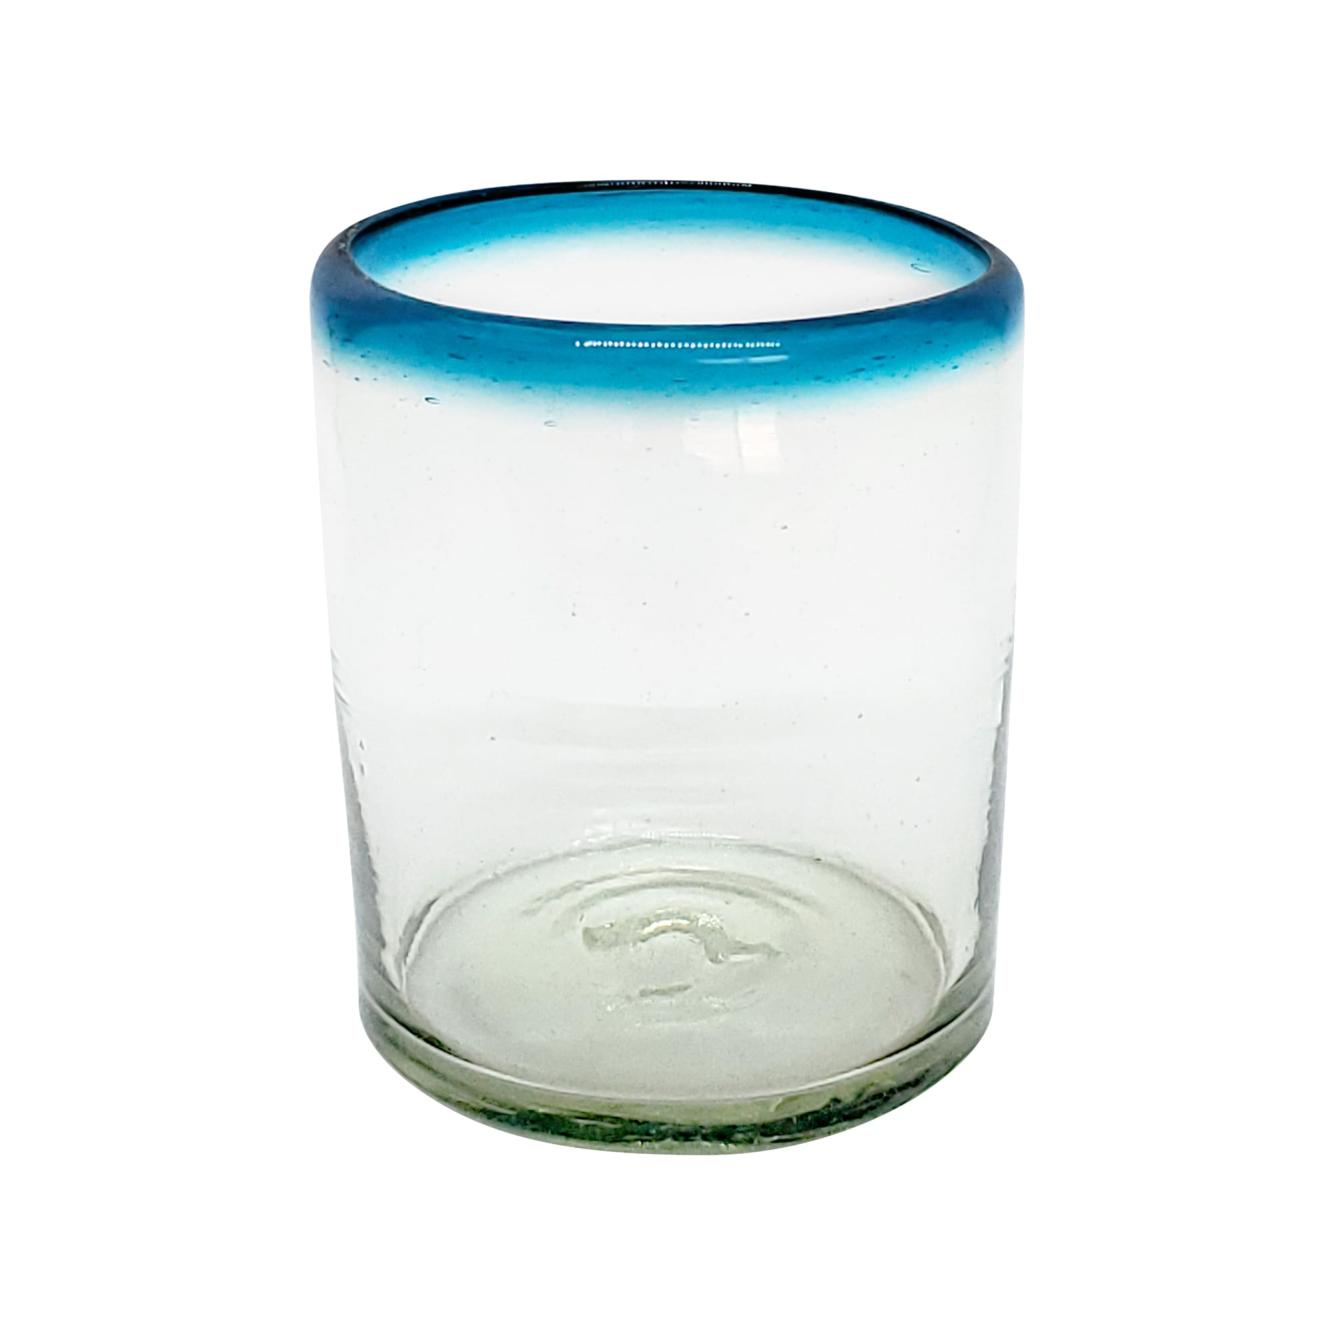 Borde de Color / Juego de 6 vasos chicos con borde azul aqua / stos vasos chicos son un gran complemento para su juego de jarra y vasos grandes.